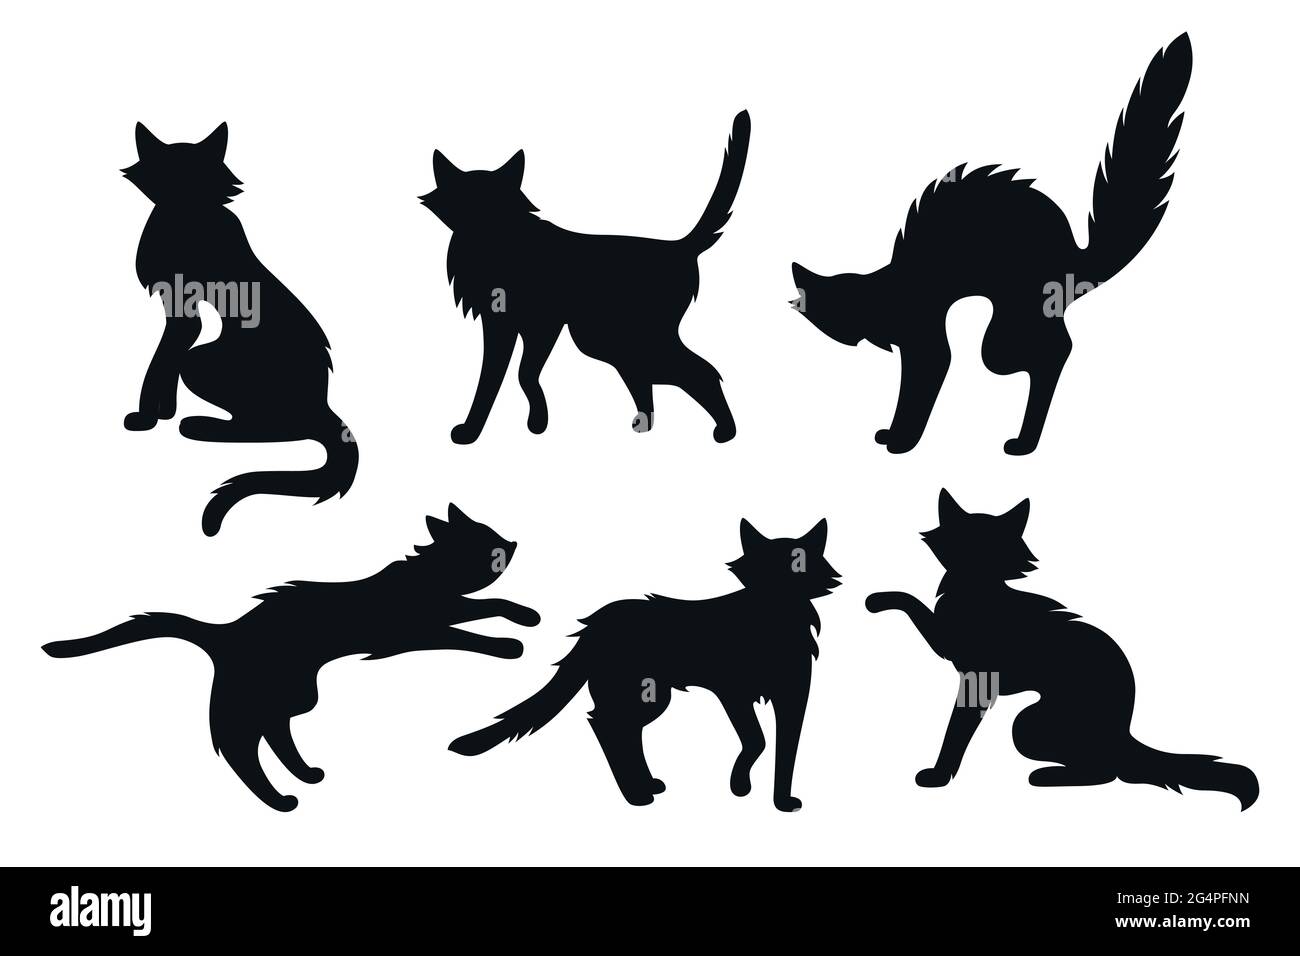 Conjunto de silueta negra de terror para Halloween con diseño de gato.  Gatito fino creepy, lindo o asustadizo malvado, colección de dibujos  animados gatos viejos. Divertido diseño de gatito de mascotas. Ilustración